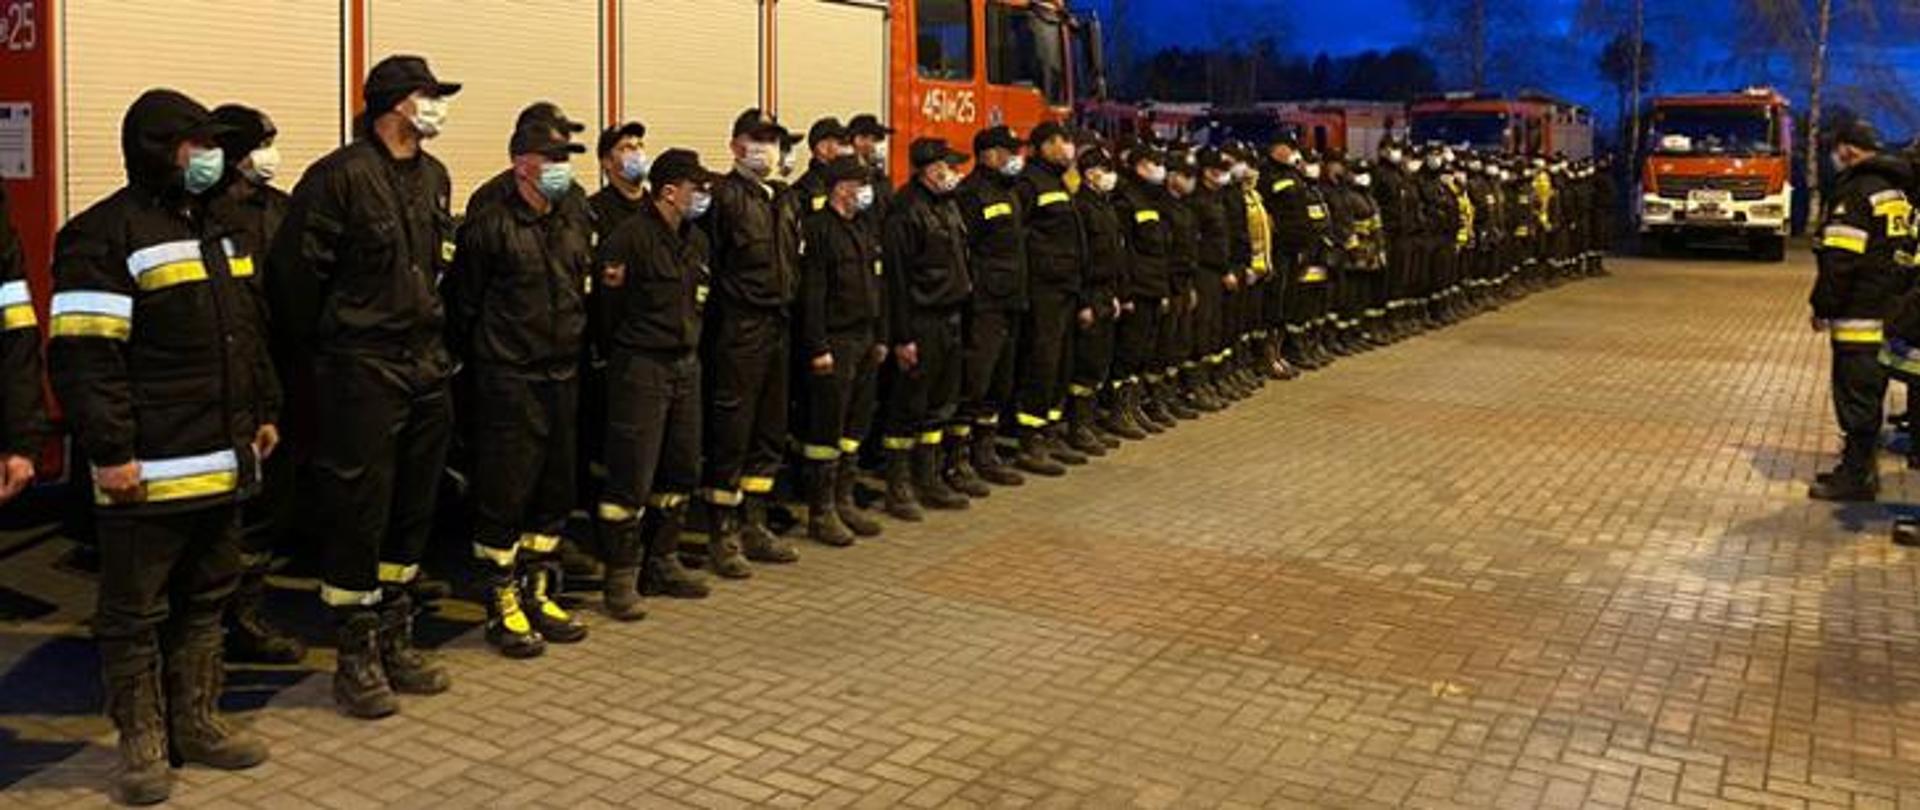 Duża liczba strażaków ustawiona w dwuszeregu na tle samochodów ratowniczo- gaśniczych straży pożarnej.